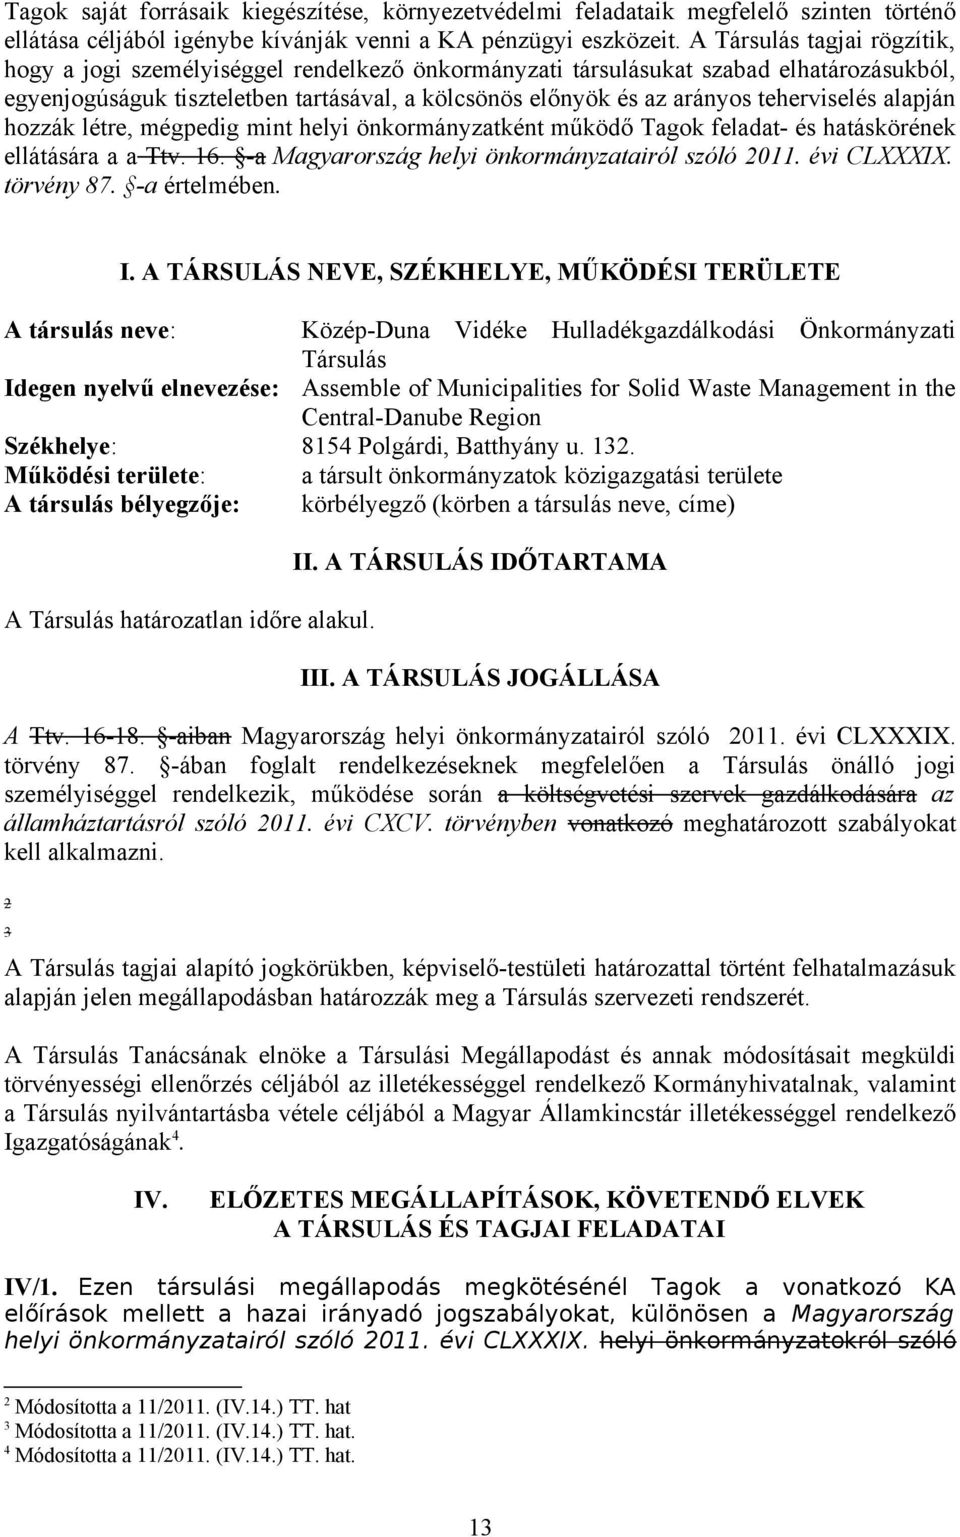 teherviselés alapján hozzák létre, mégpedig mint helyi önkormányzatként működő Tagok feladat- és hatáskörének ellátására a a Ttv. 16. -a Magyarország helyi önkormányzatairól szóló 2011. évi CLXXXIX.